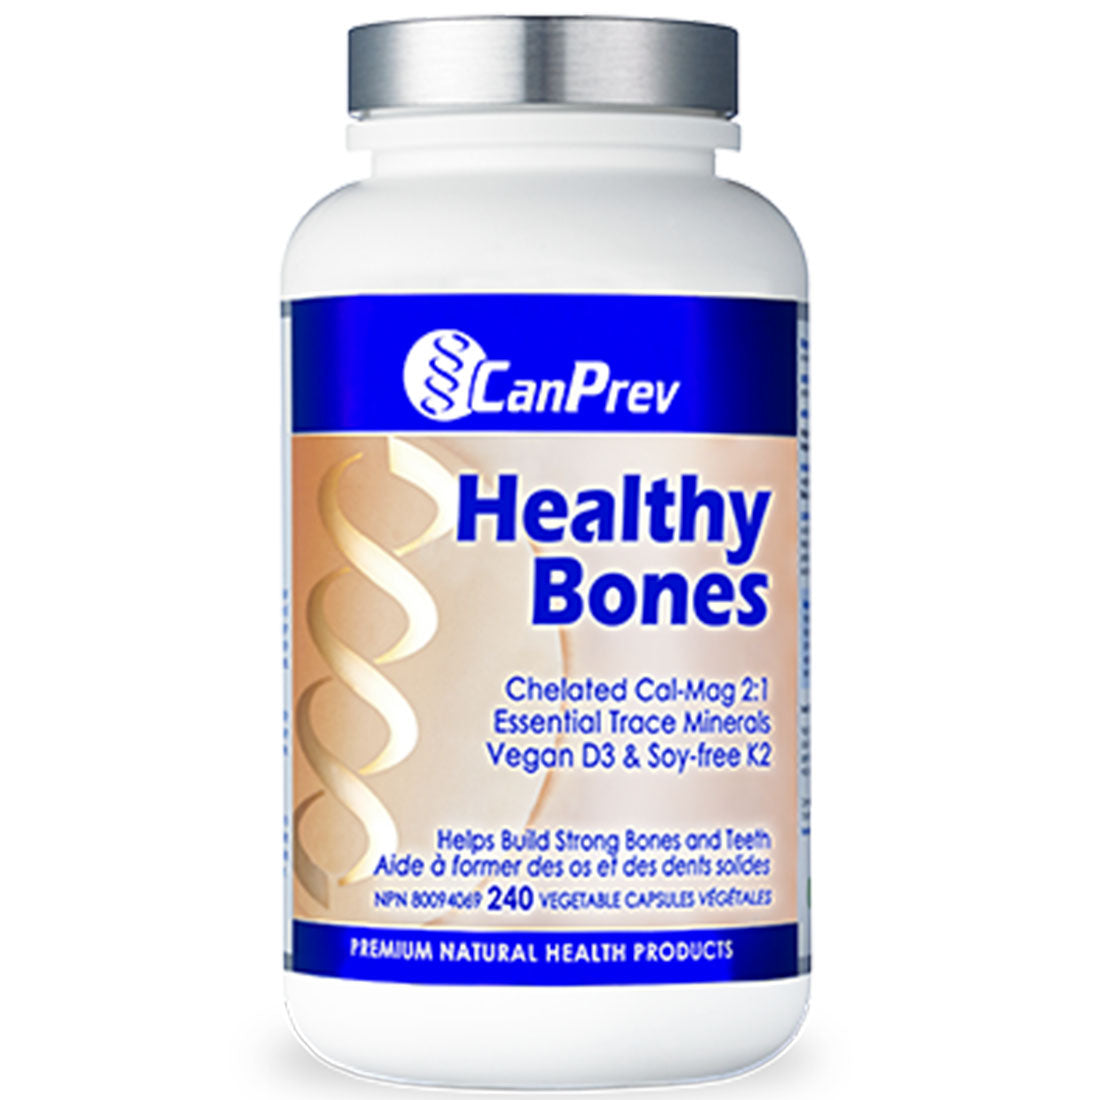 CanPrev Healthy Bones